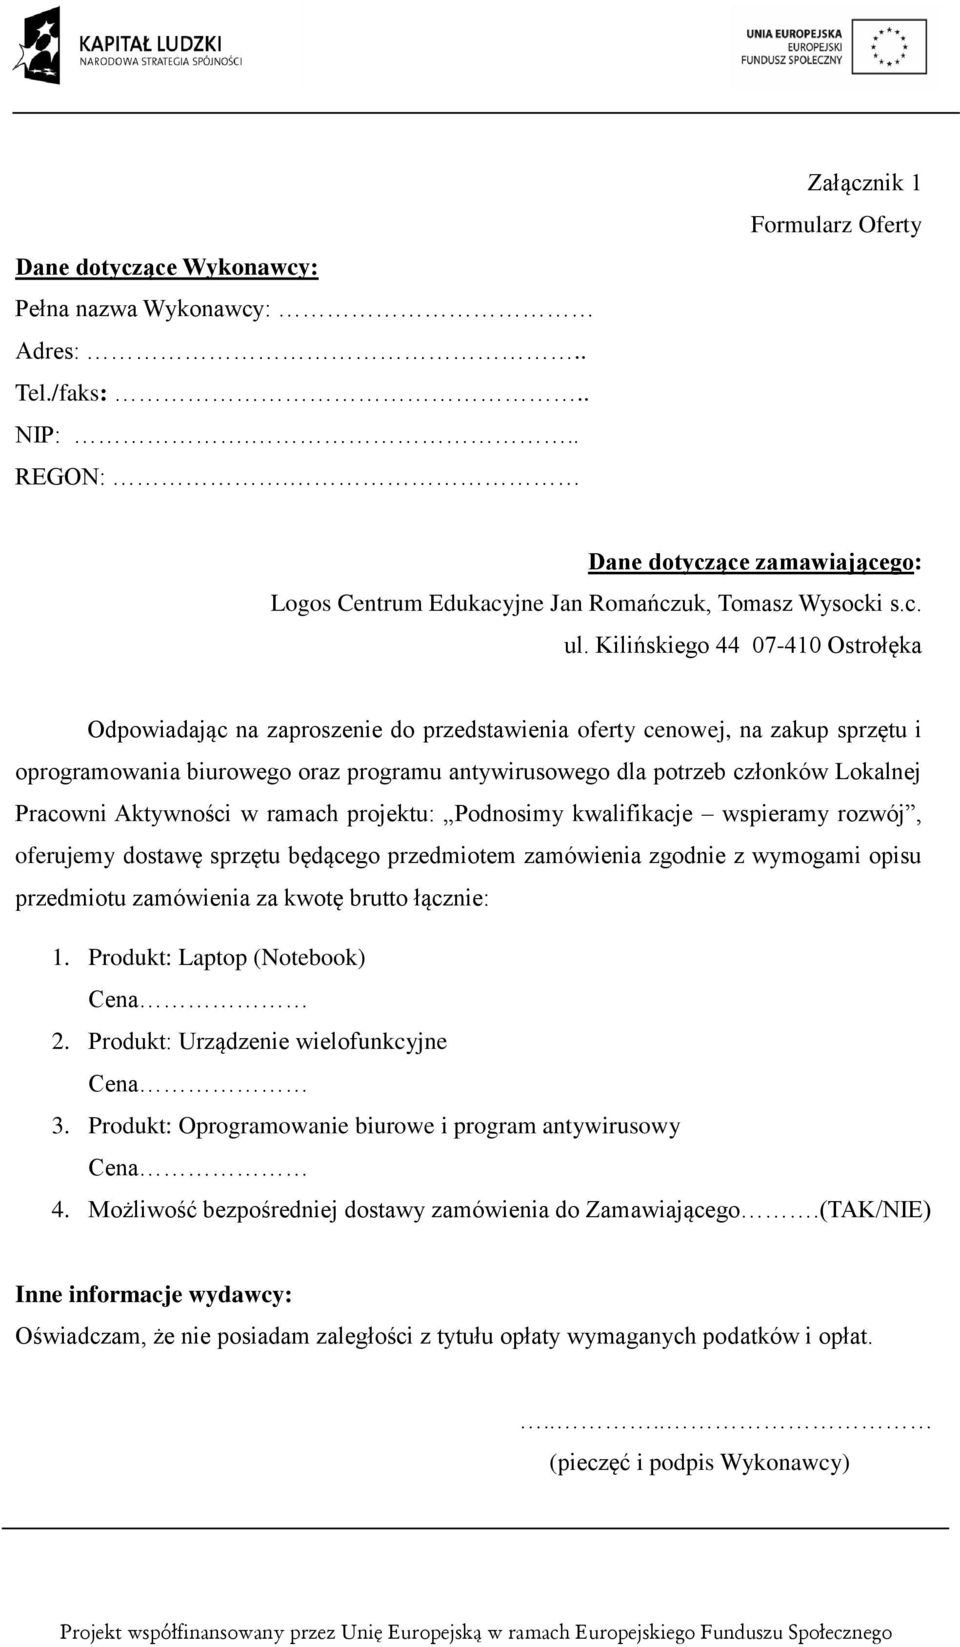 Kilińskiego 44 07-410 Ostrołęka Odpowiadając na zaproszenie do przedstawienia oferty cenowej, na zakup sprzętu i oprogramowania biurowego oraz programu antywirusowego dla potrzeb członków Lokalnej